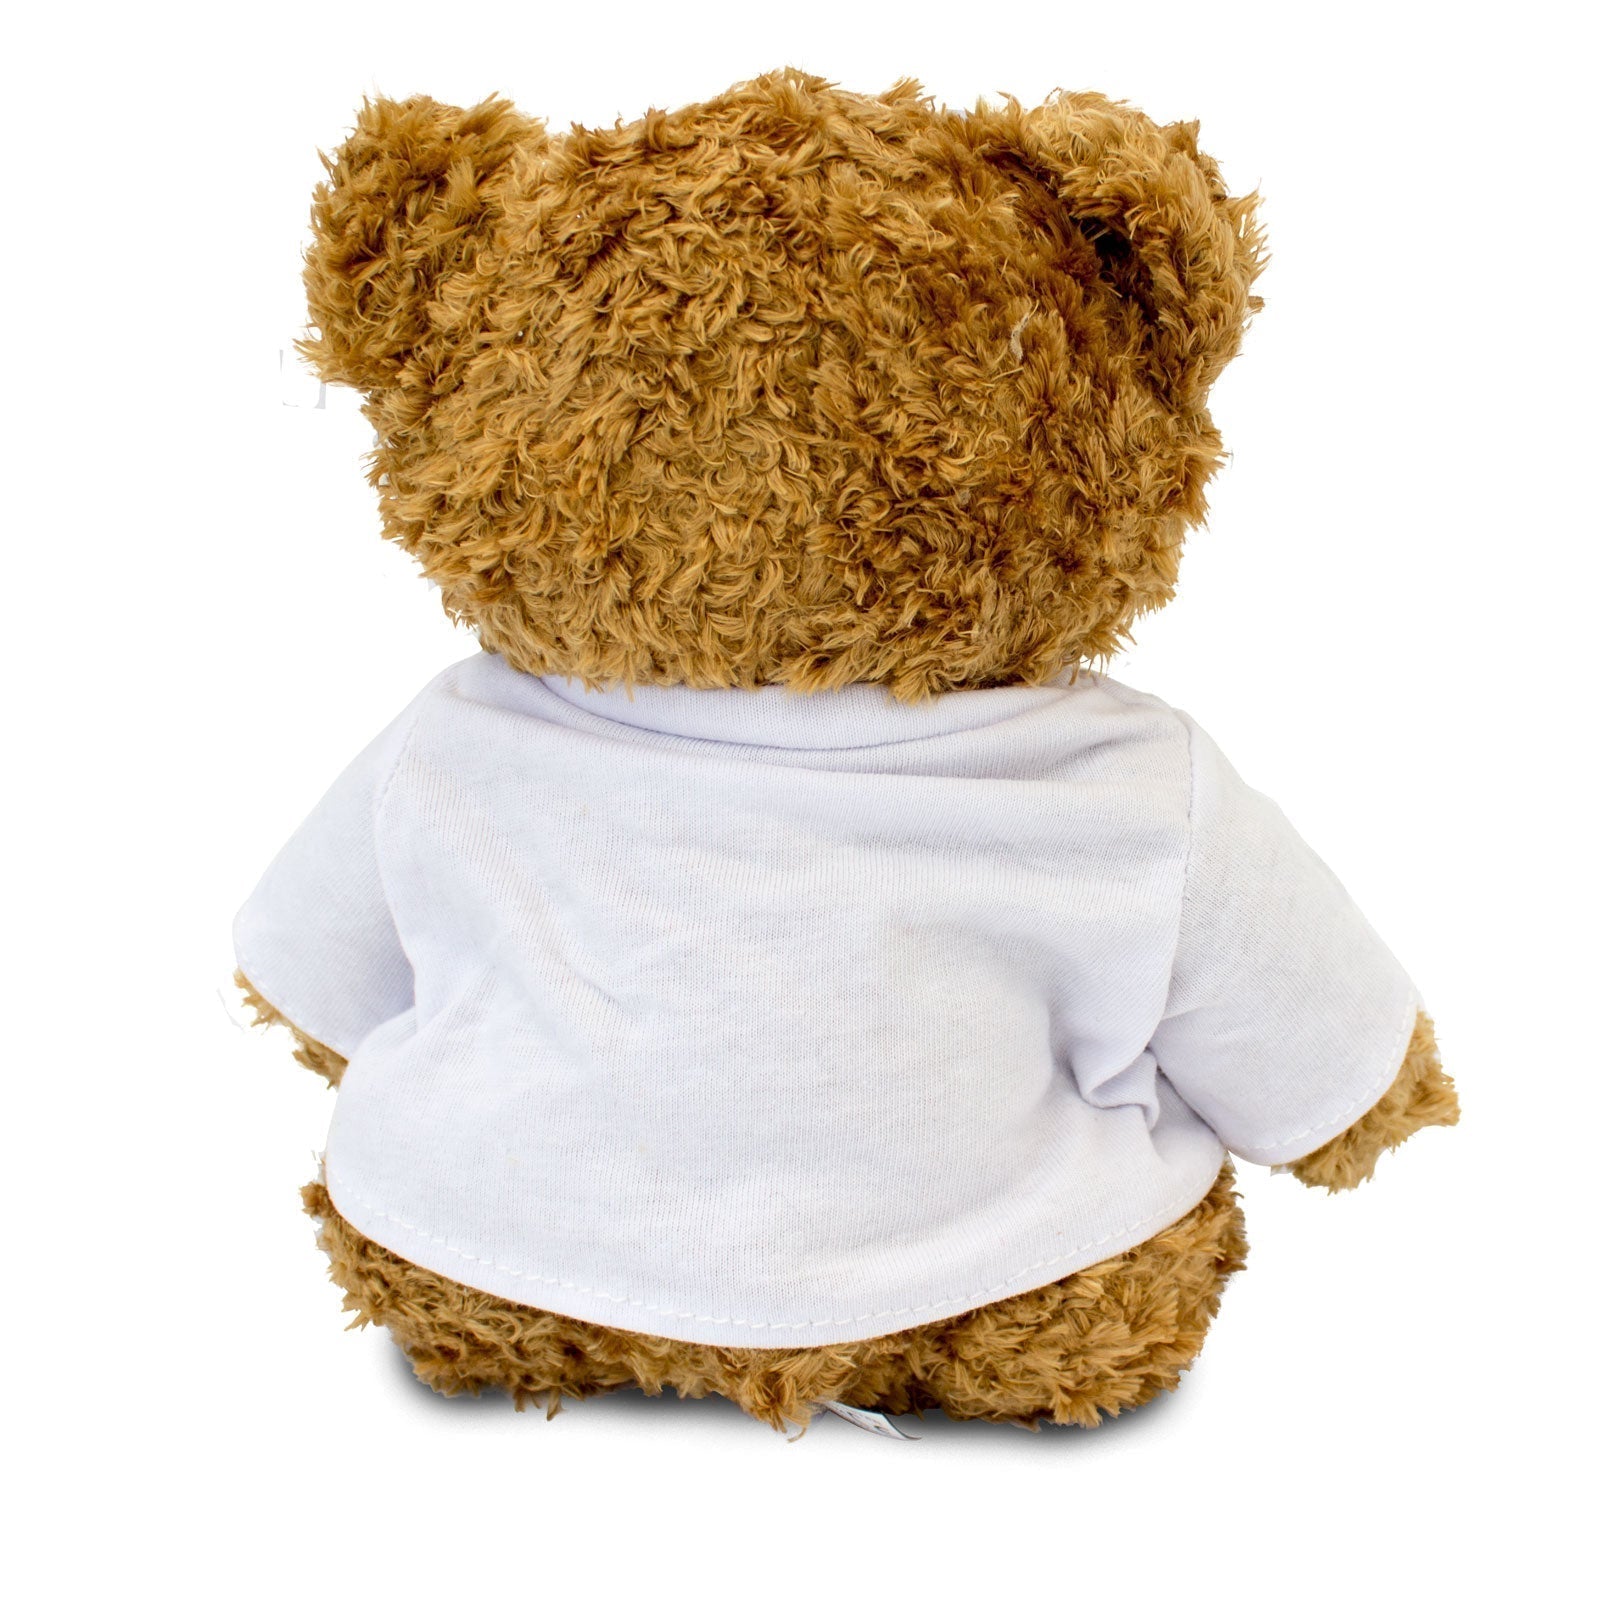 I Love Kindness - Teddy Bear